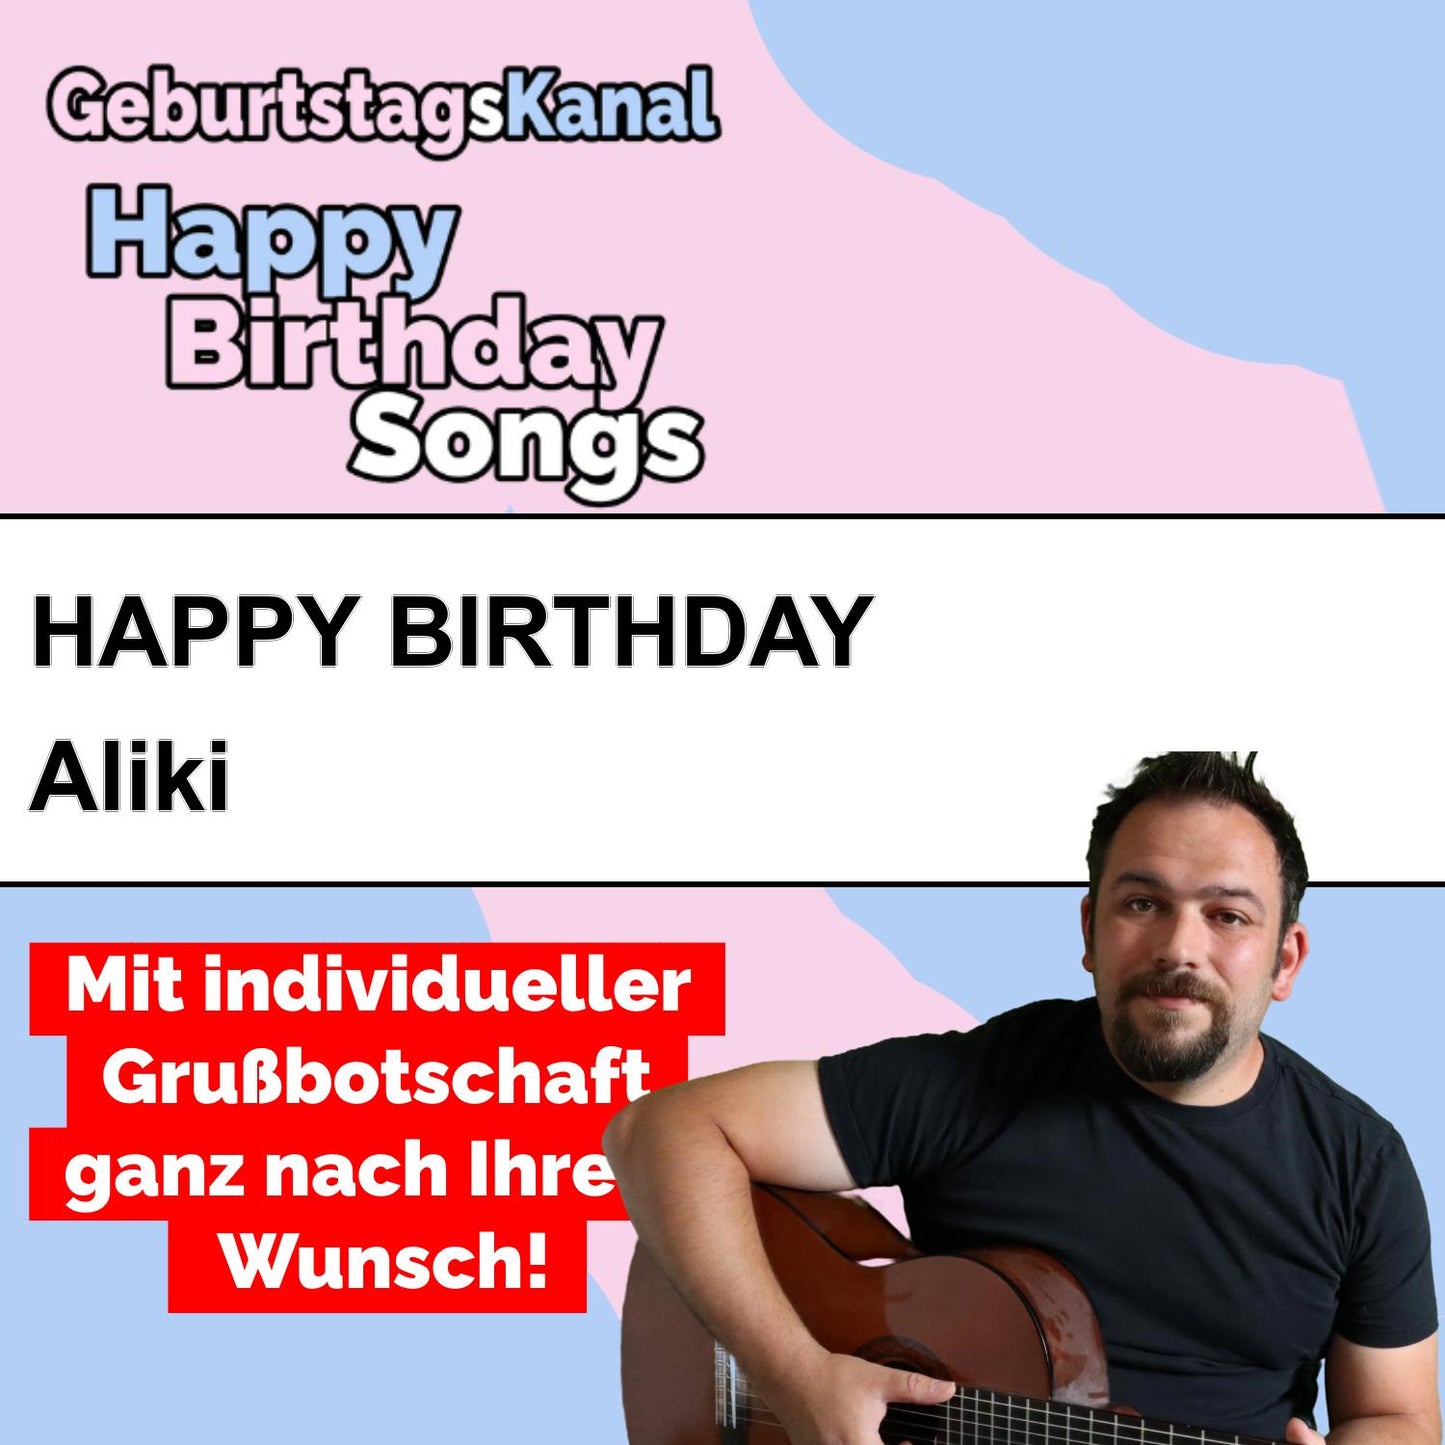 Produktbild Happy Birthday to you Aliki mit Wunschgrußbotschaft